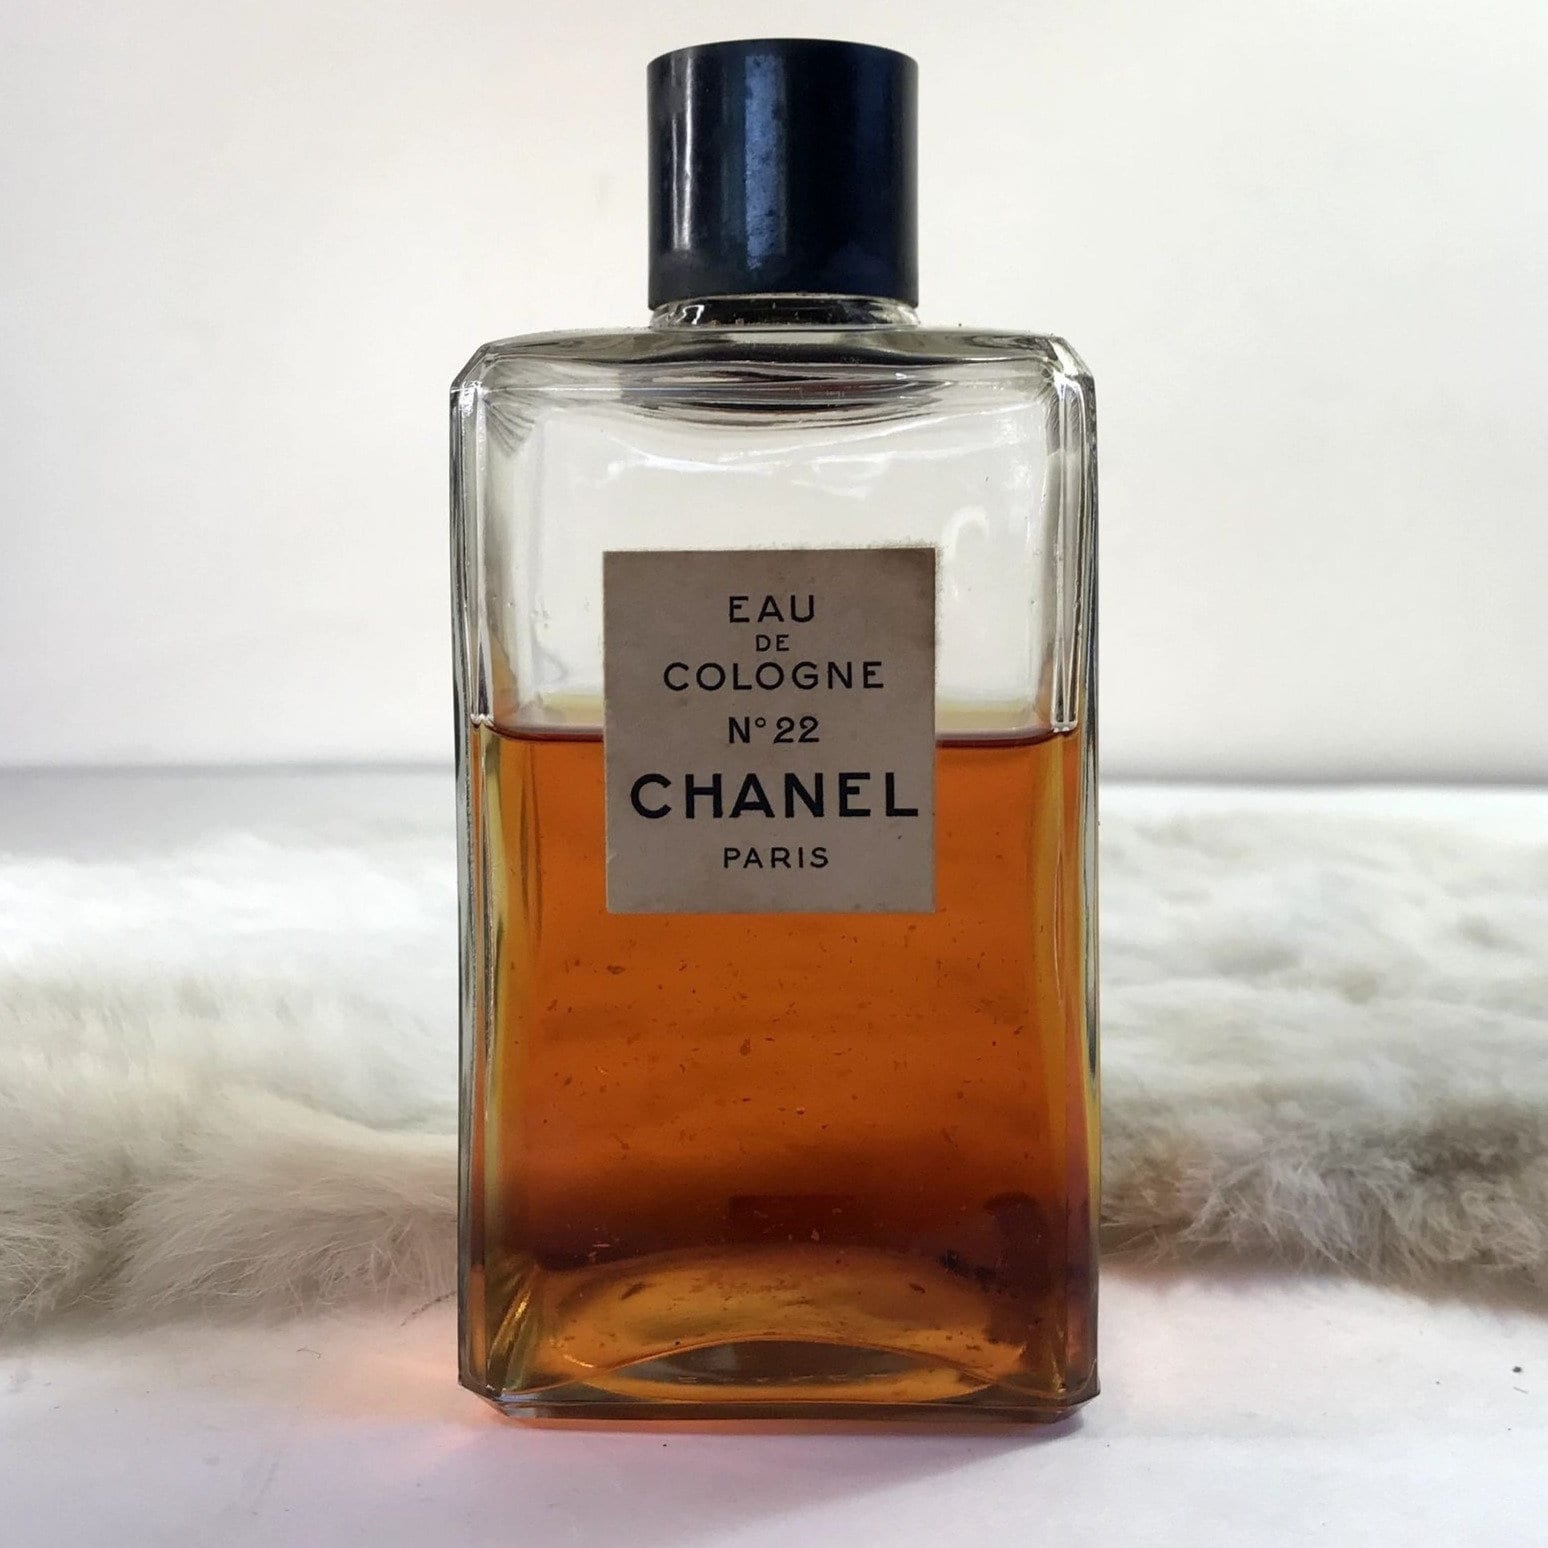 Chanel No. 22 Eau De Cologne Vintage Perfume Bottle 1970s -  UK